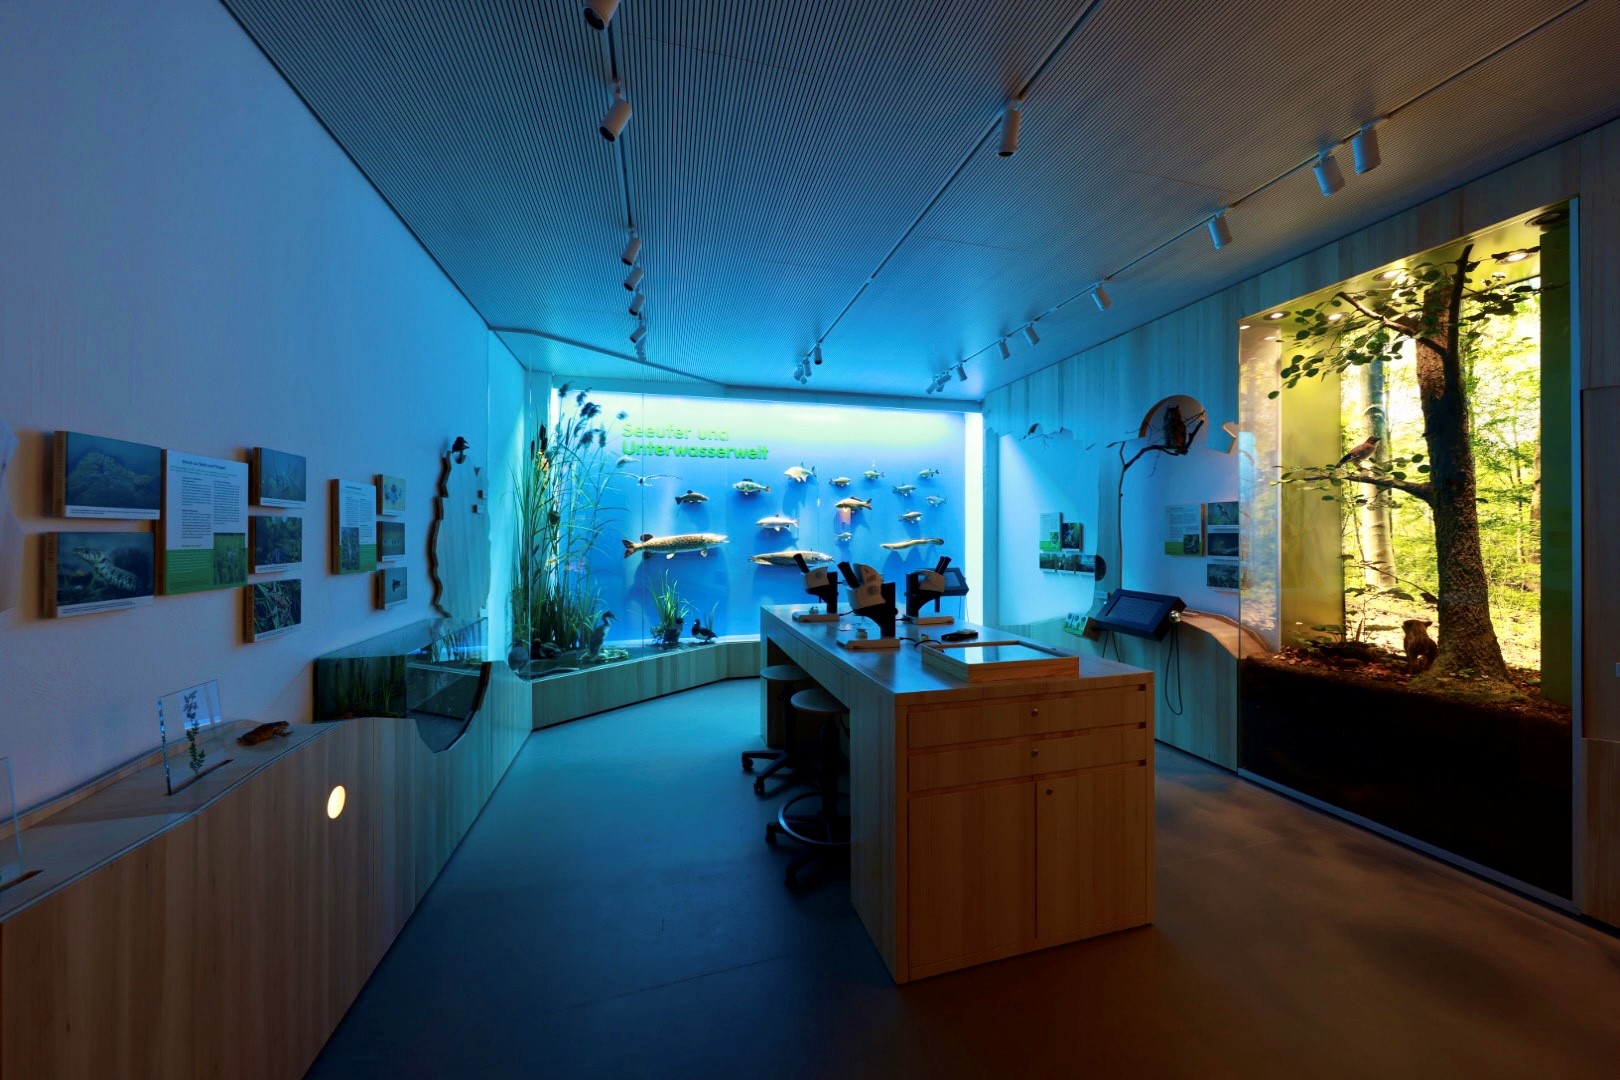 Unterwasserwelt: Mindelsee-Ausstellung